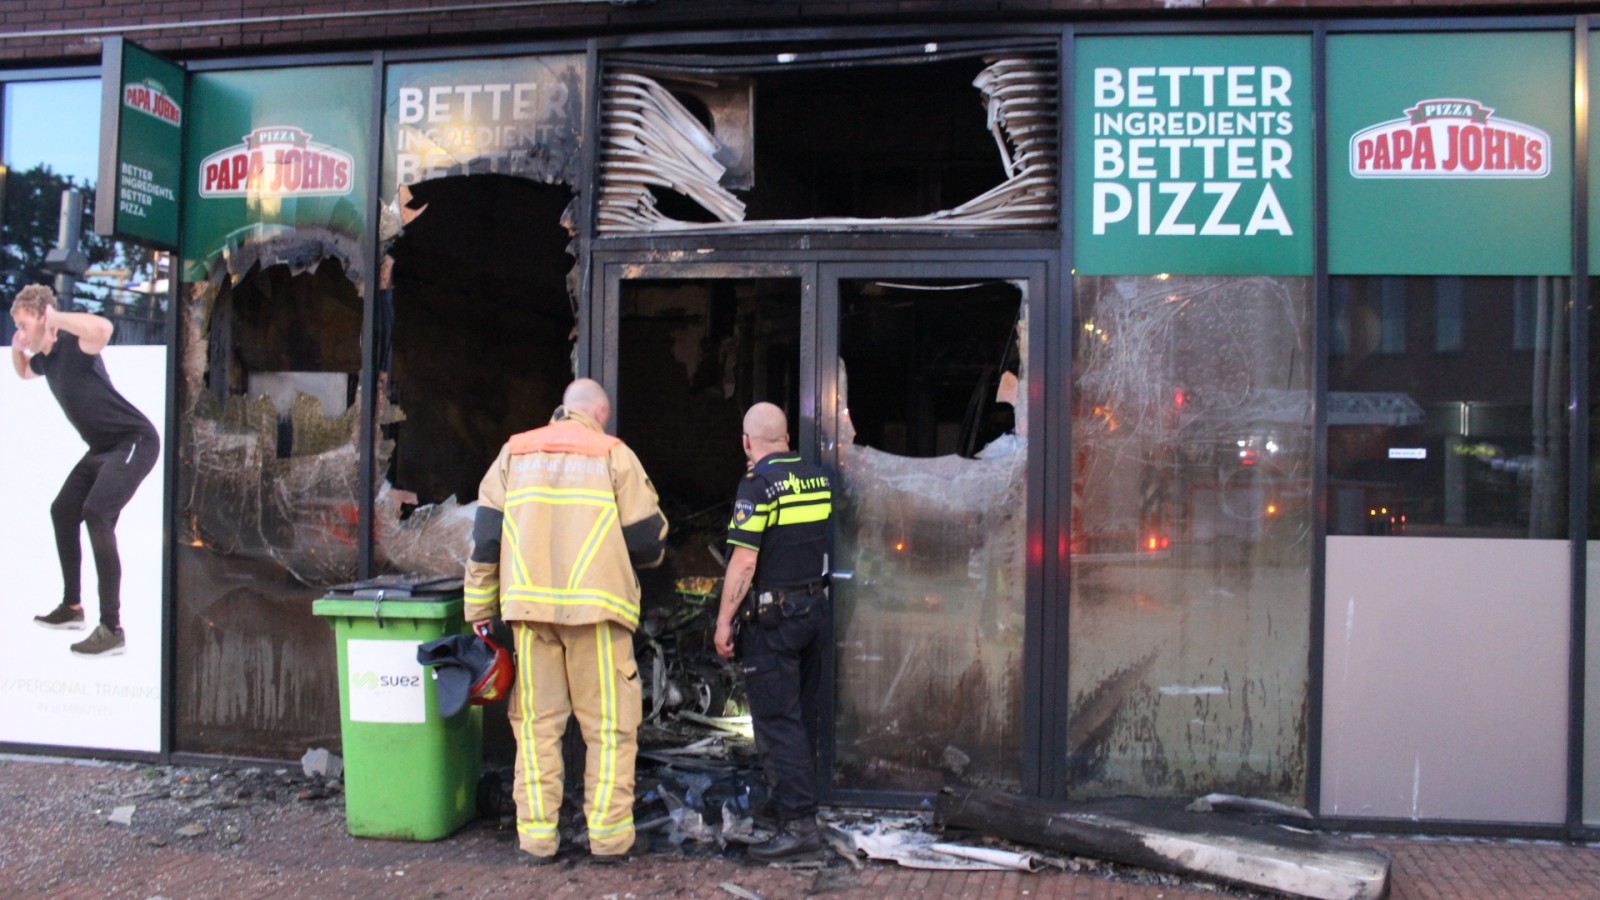 Pizzeria in Noord volledig uitgebrand 